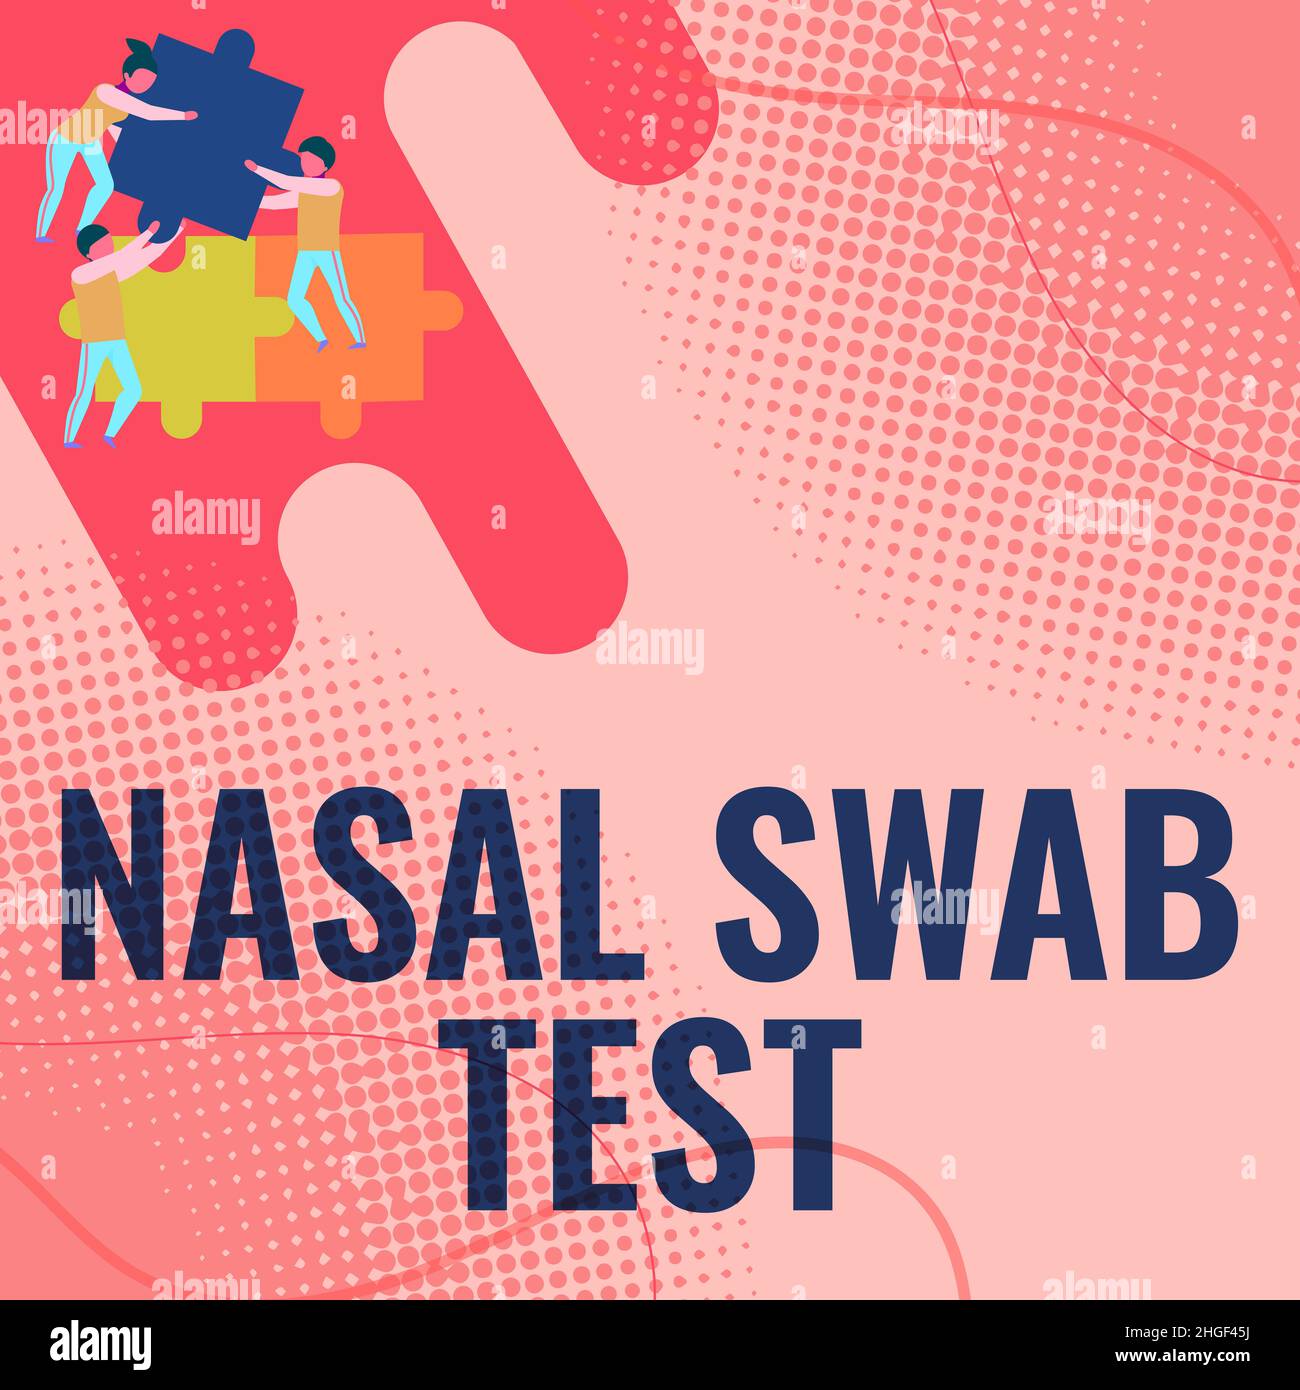 Texte montrant l'inspiration Nasal Swab Test, mot pour le diagnostic d'une infection des voies respiratoires supérieures par la sécrétion nasale équipe tenant des morceaux de scie sauteuse Banque D'Images